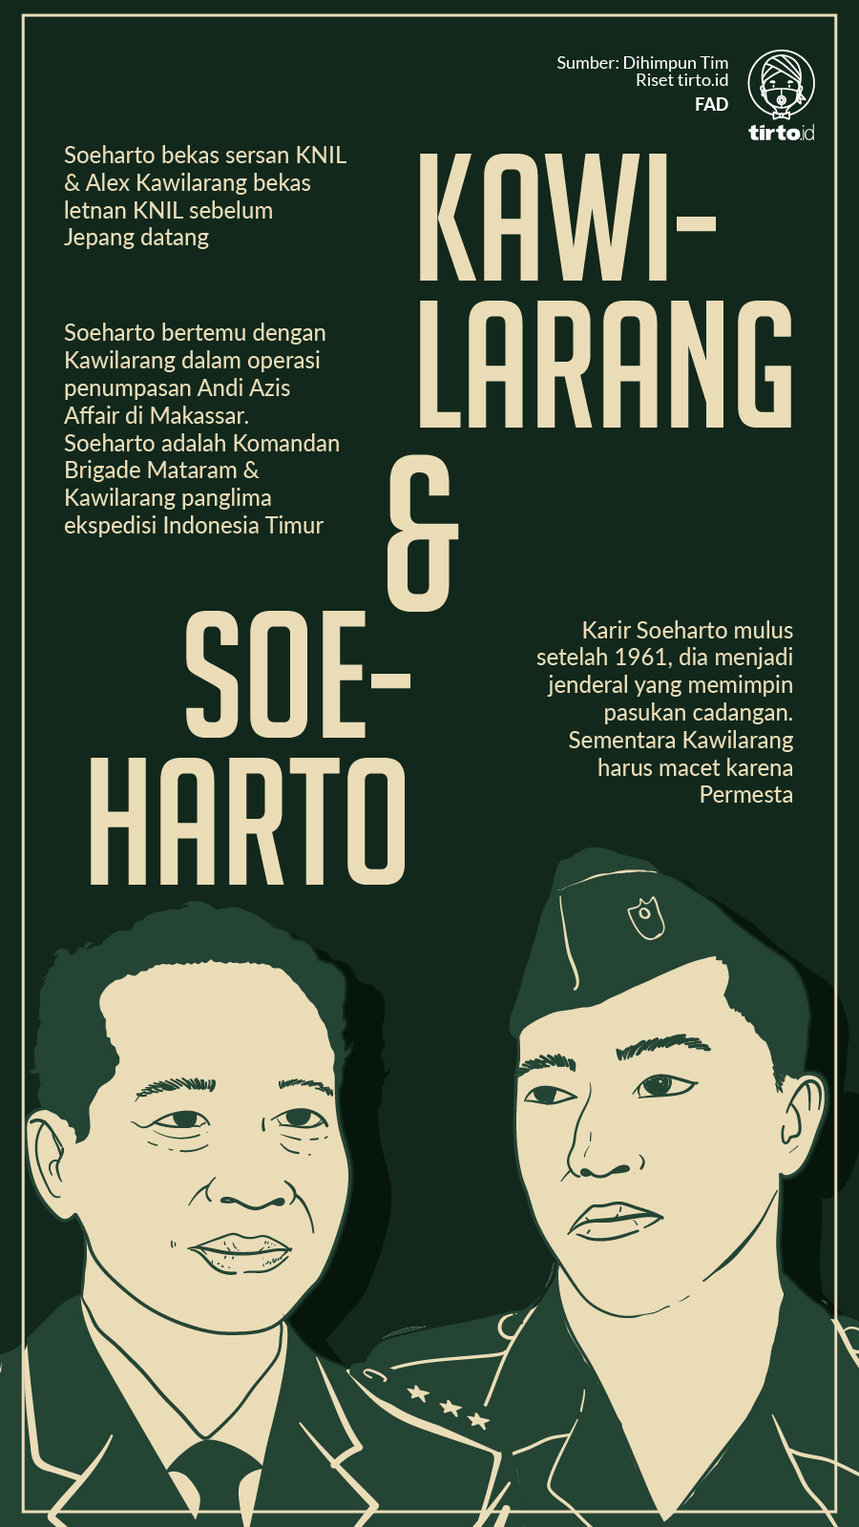 Infografik Kawilarang dan Soeharto